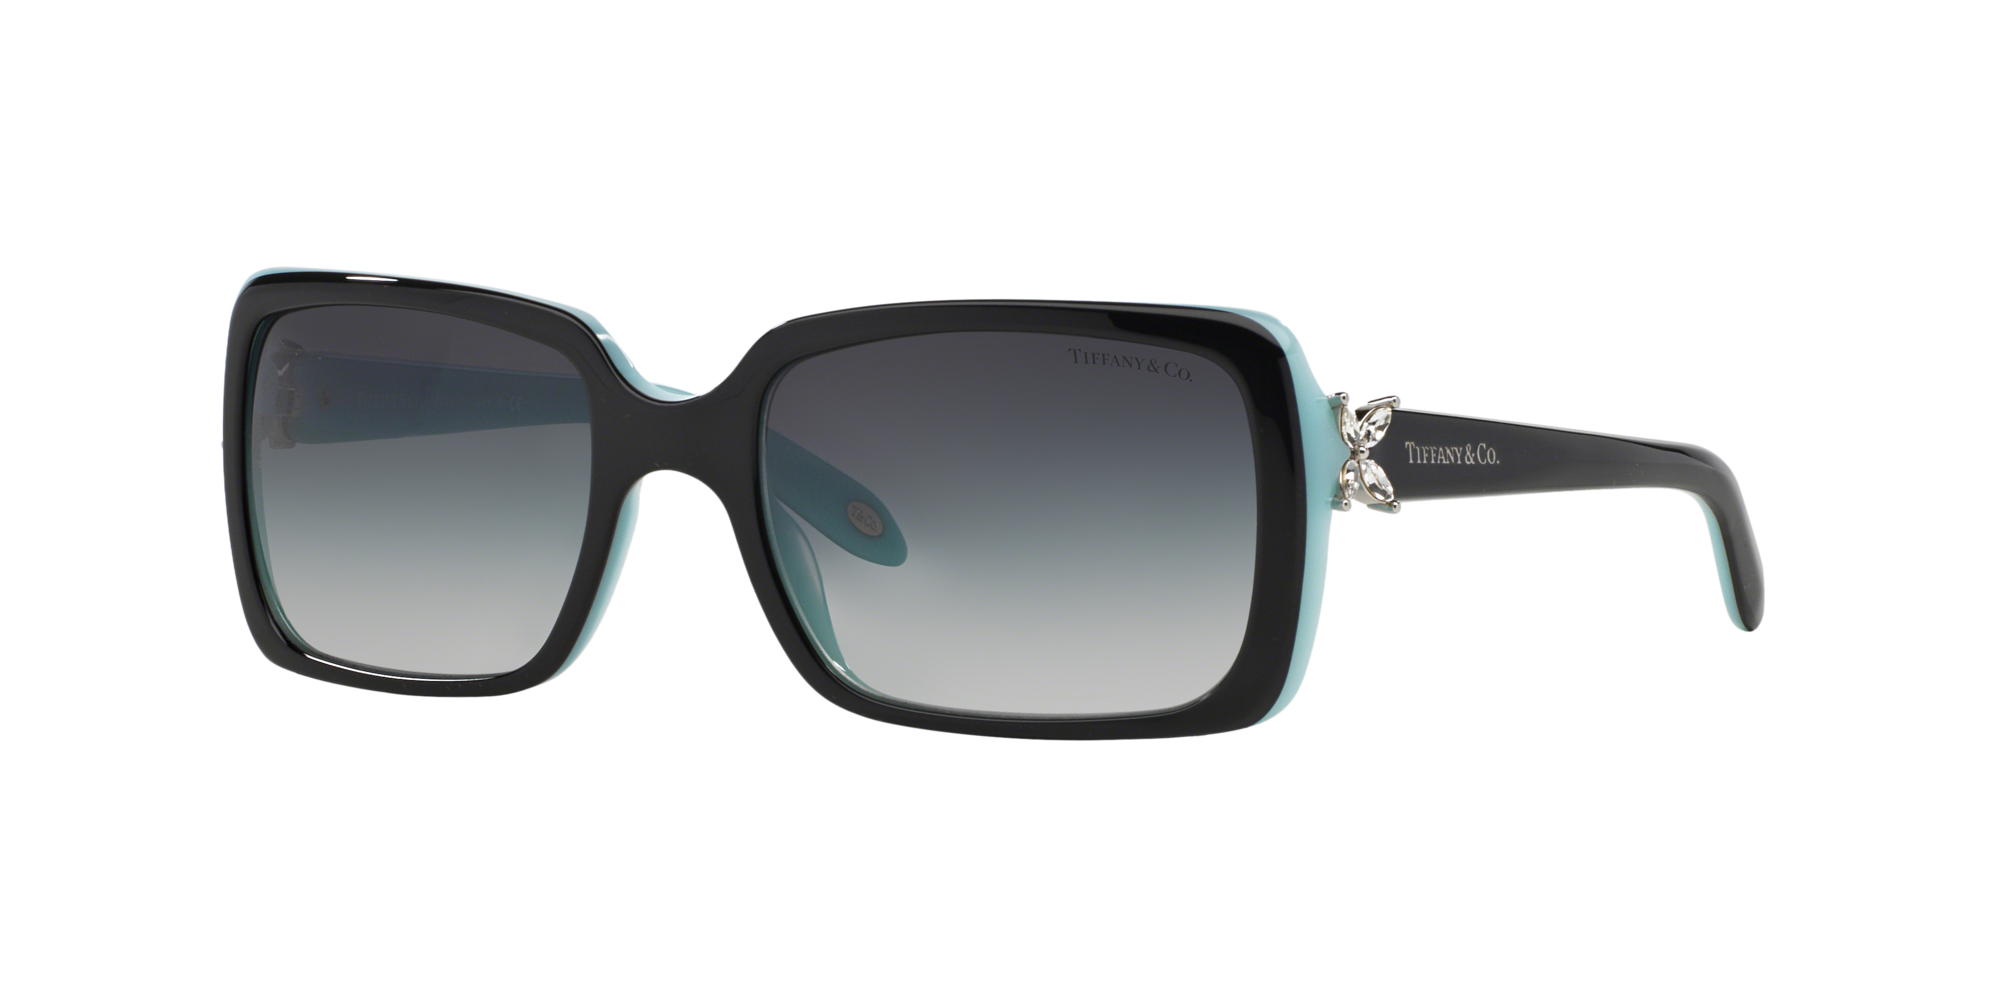 tiffany sunglasses 4047b